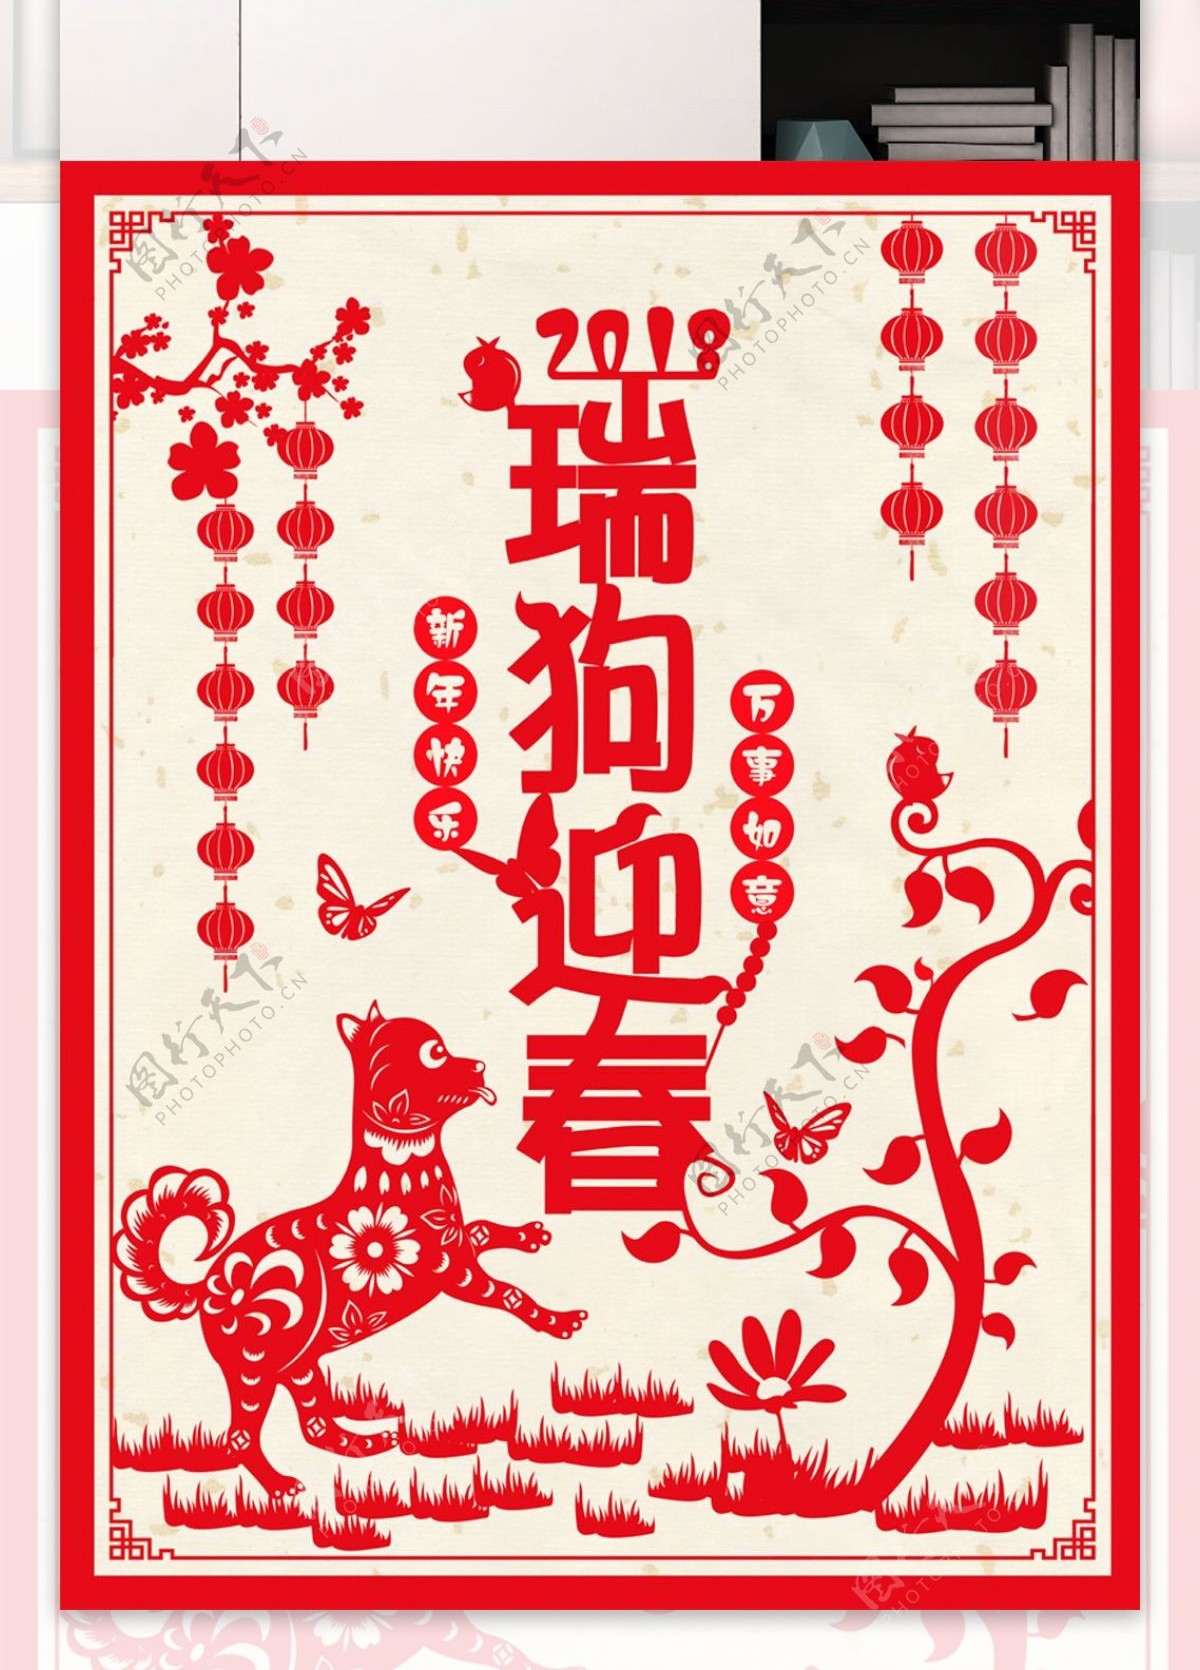 2018年瑞狗迎春剪纸风格红色促销海报